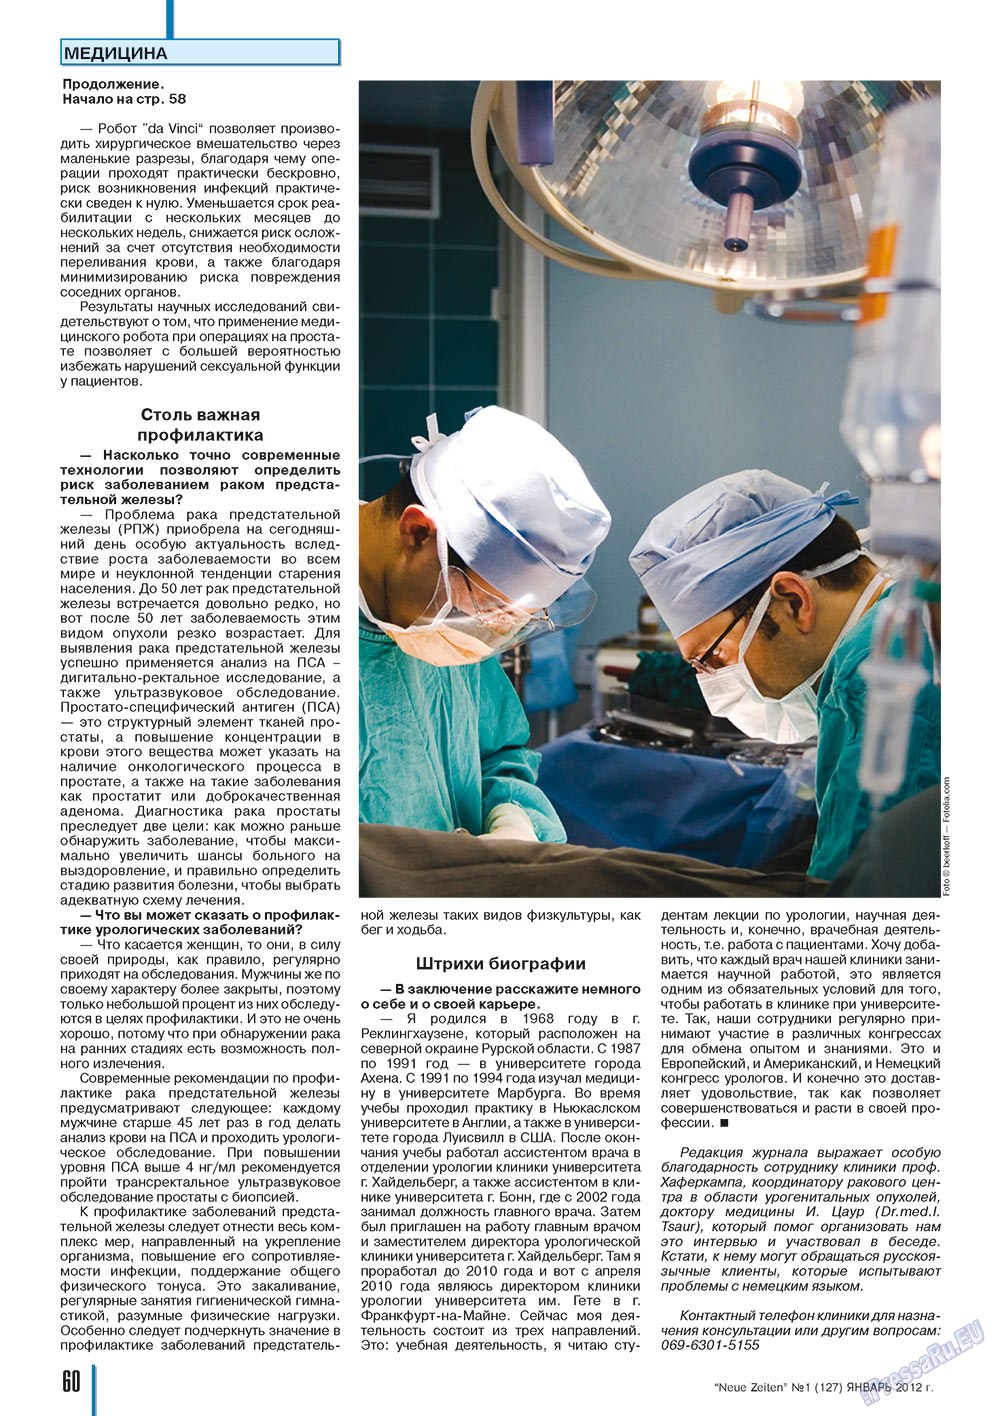 Neue Zeiten, журнал. 2012 №1 стр.60